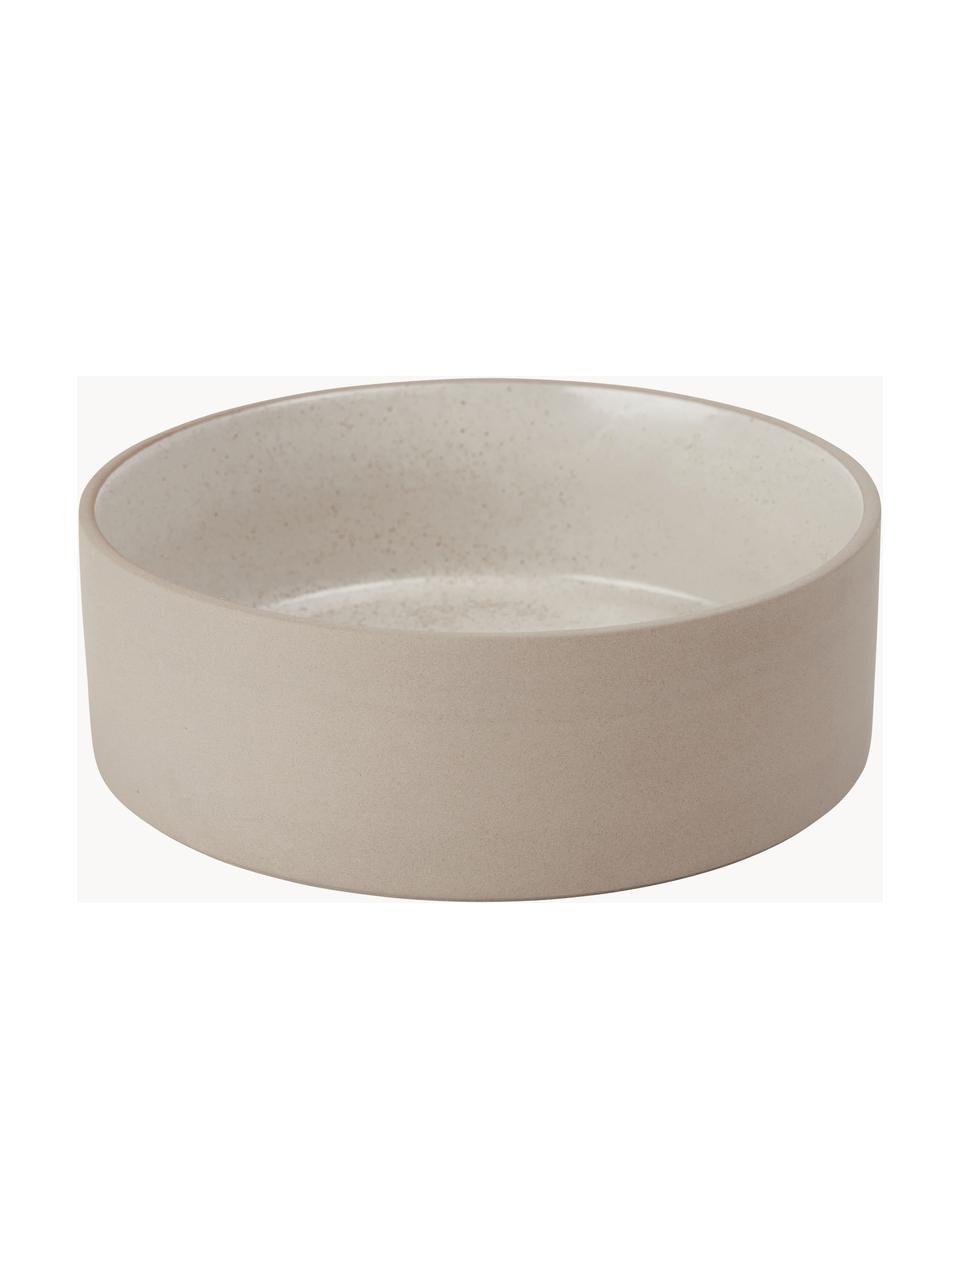 Miska dla zwierząt Sia, różne rozmiary, 100% ceramika, Beżowy, Ø 13 x 5 cm